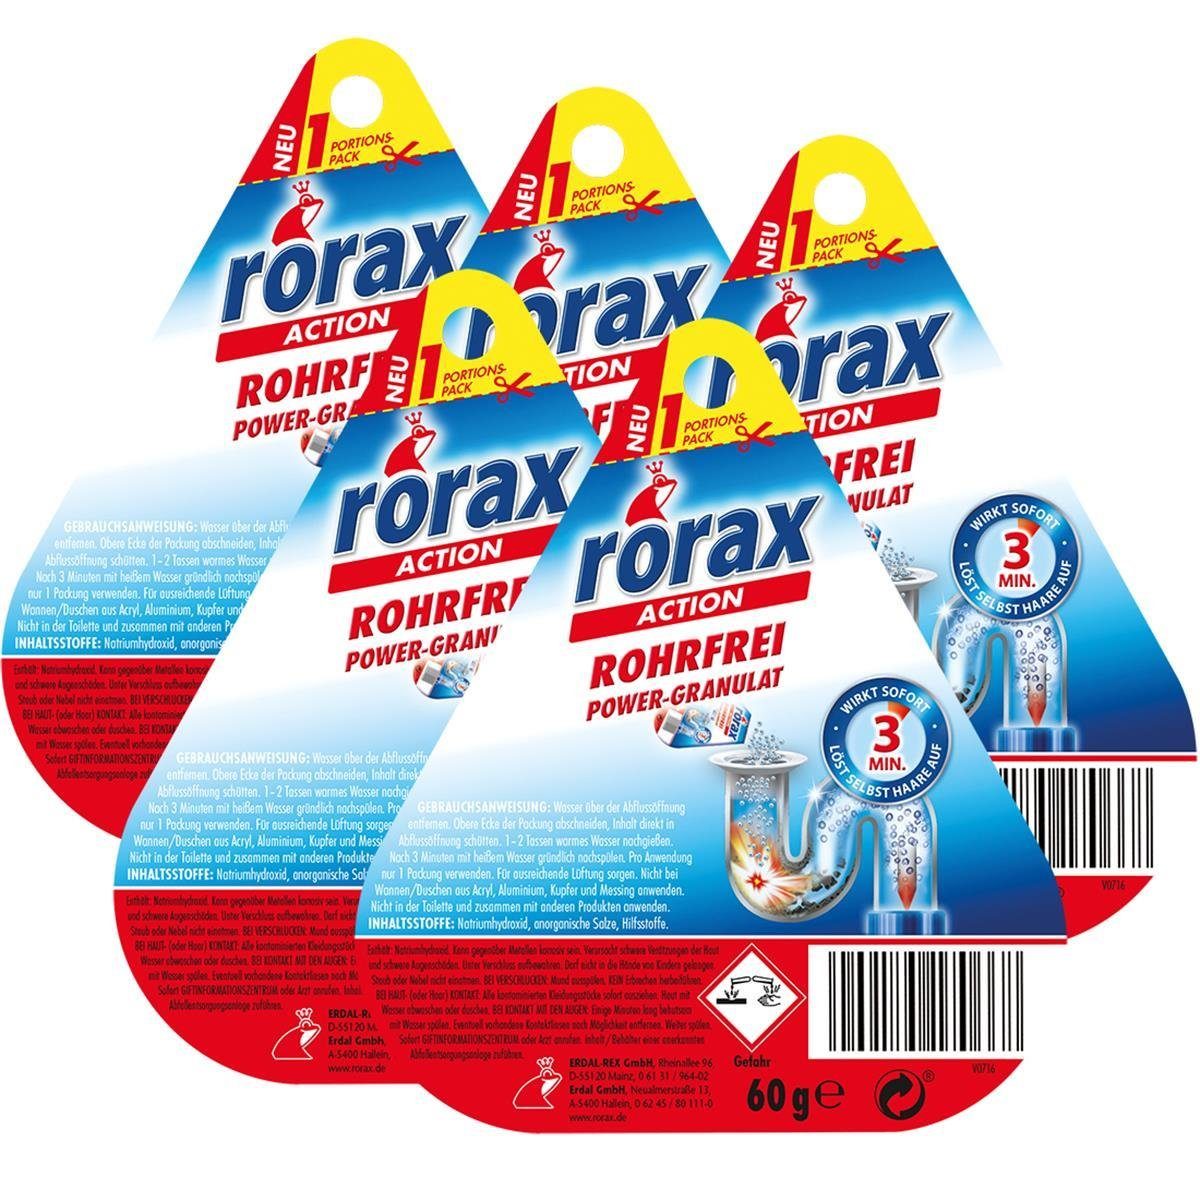 rorax 5x rorax Rohrfrei Power-Granulat Wirkt Rohrreiniger - 60g & lös sofort Portionspack